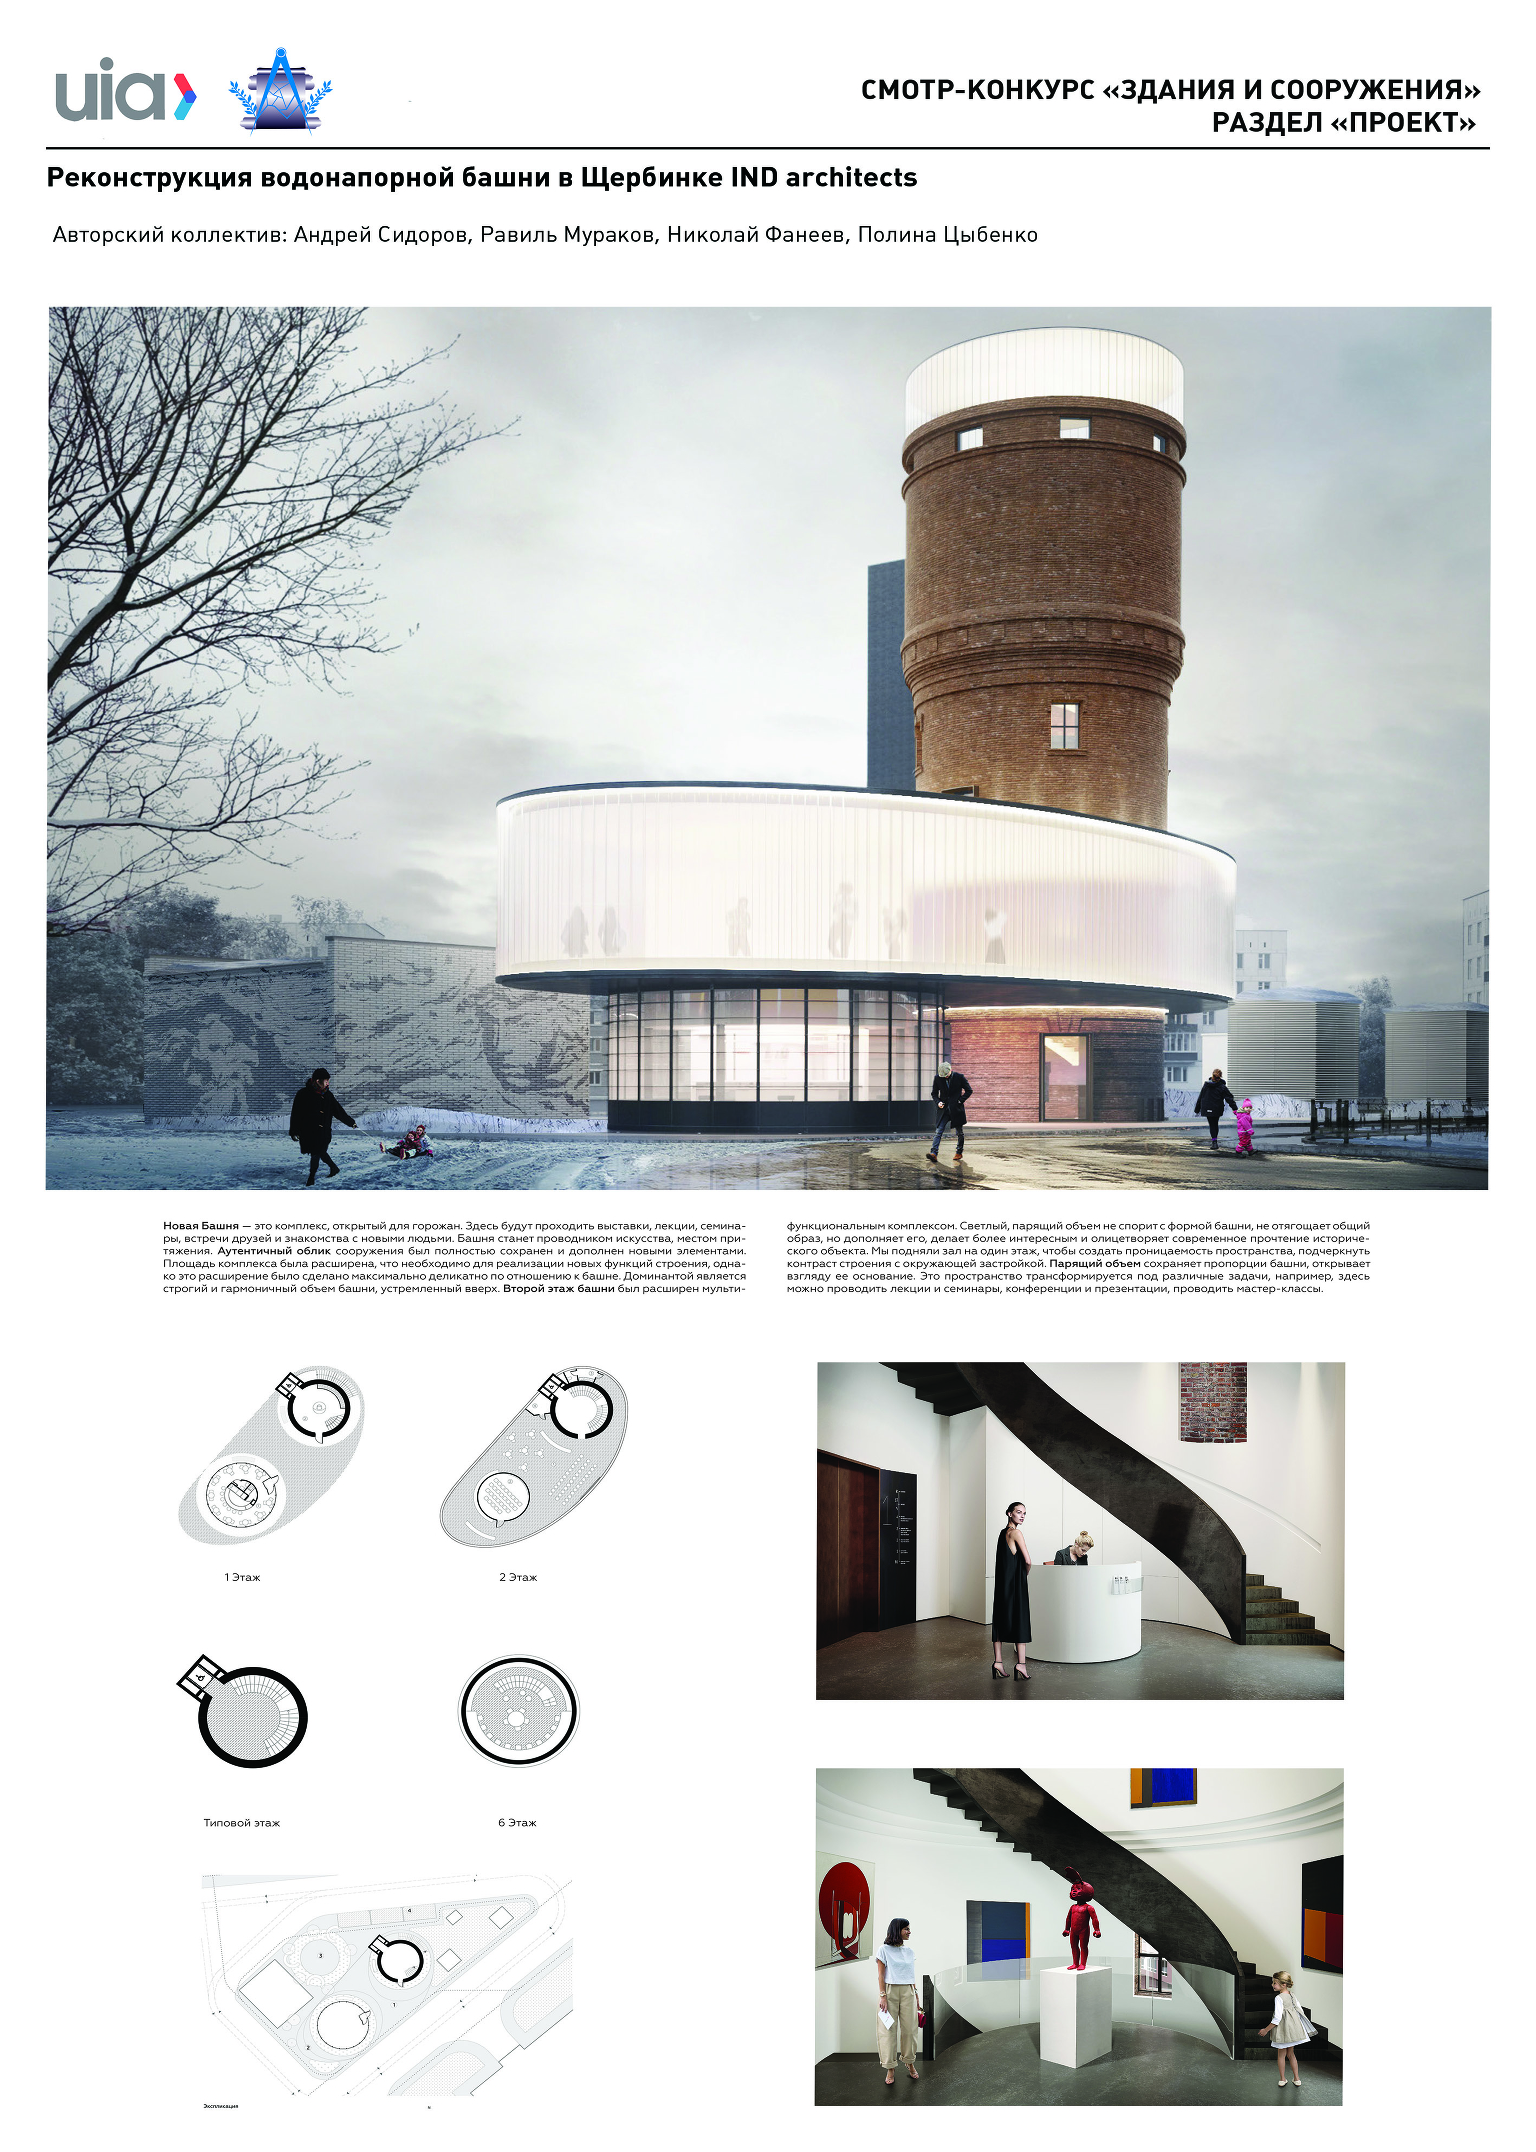 Реконструкция водонапорной башни в Щербинке
IND architects
